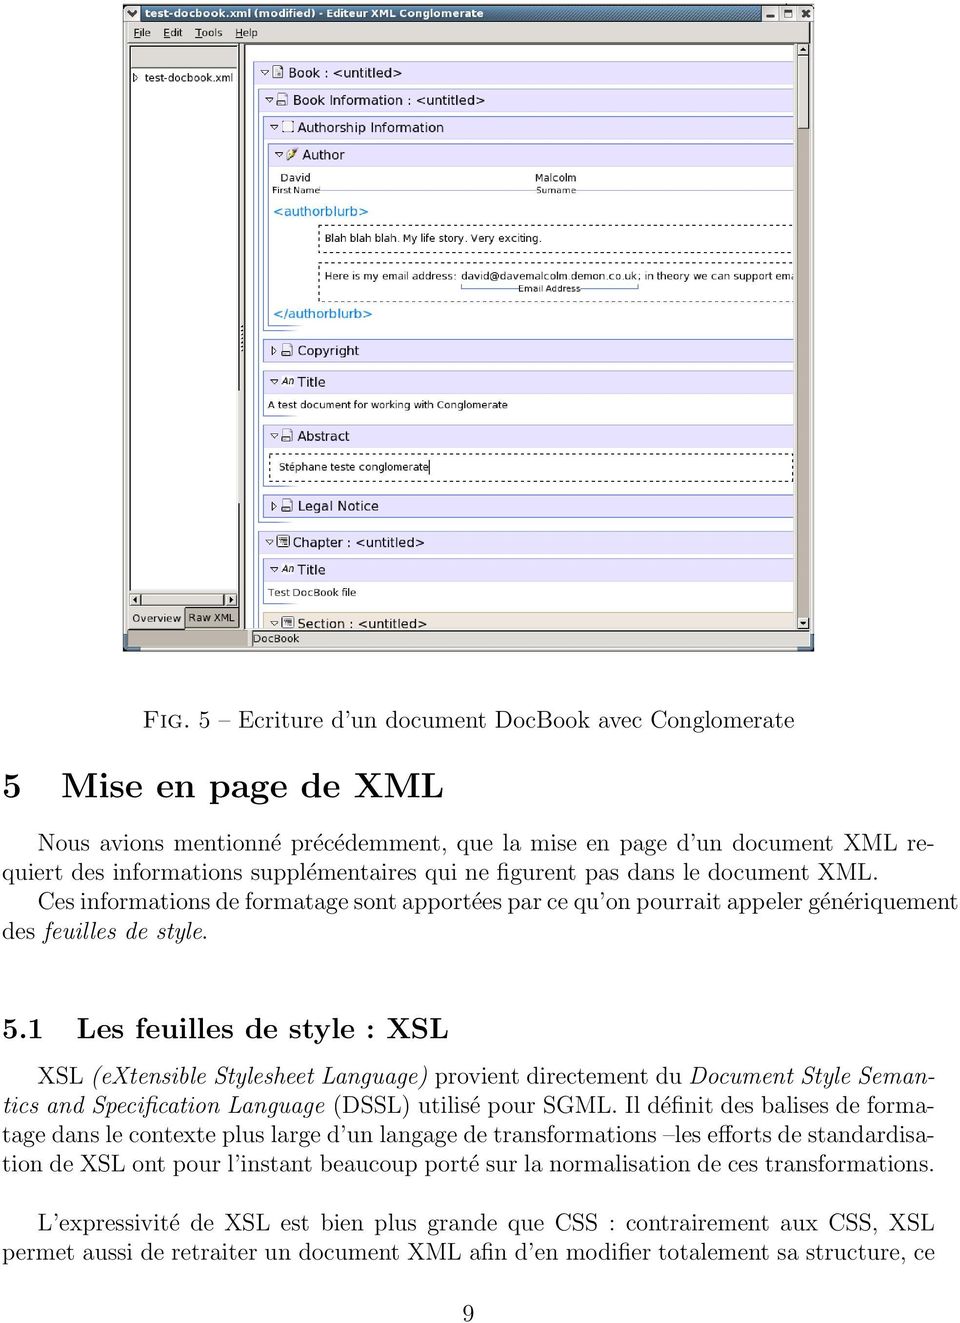 1 Les feuilles de style : XSL XSL (extensible Stylesheet Language) provient directement du Document Style Semantics and Specification Language (DSSL) utilisé pour SGML.